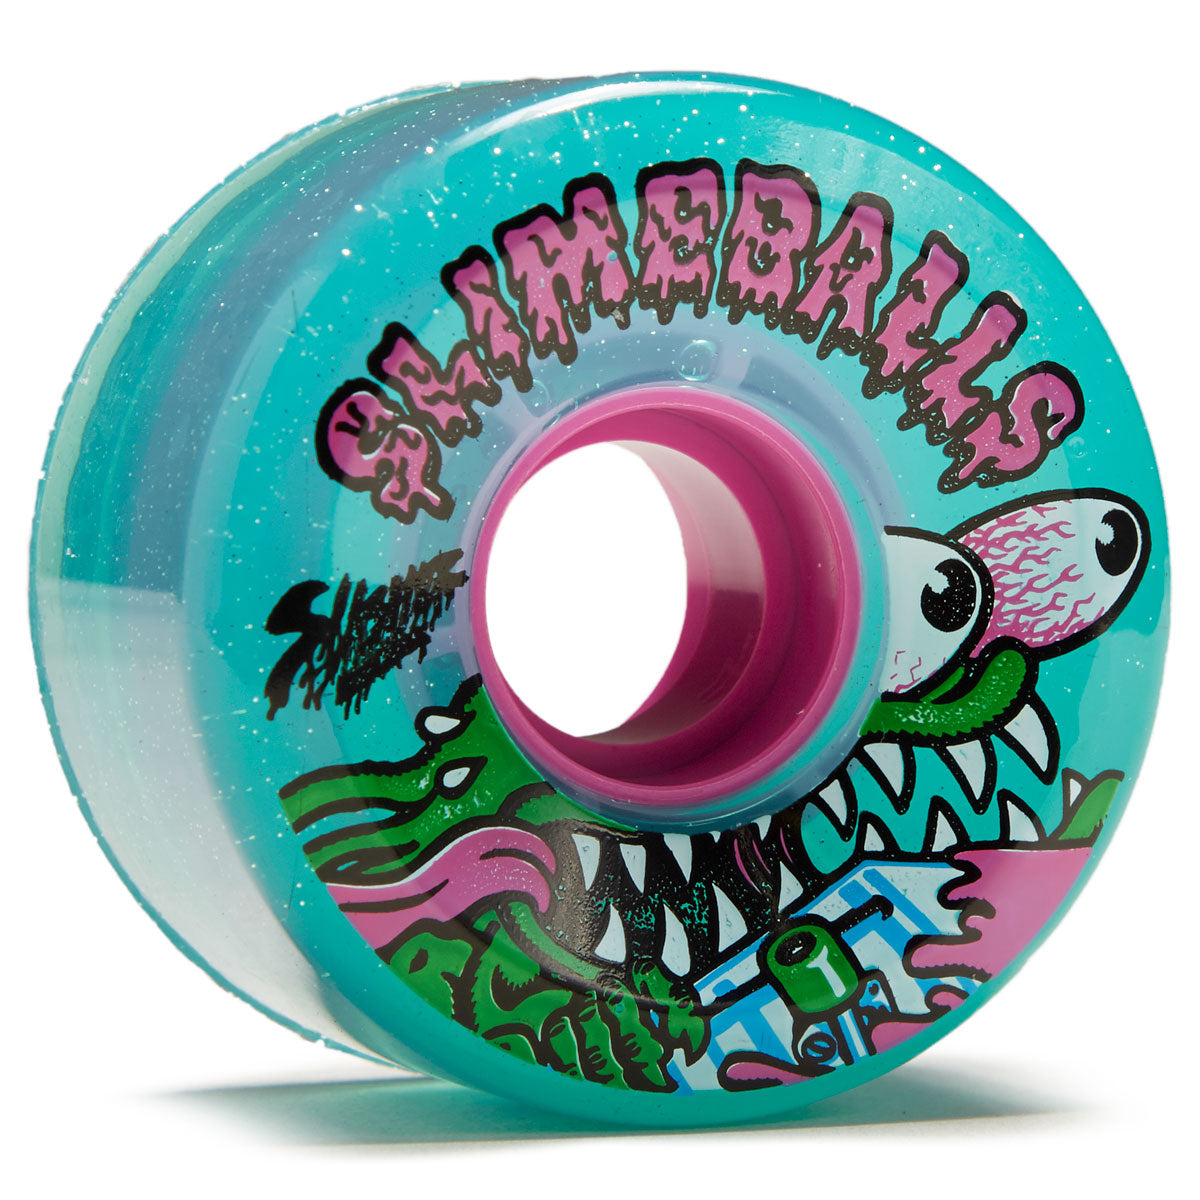 Slime Balls Meek Slasher OG Slime 78a Skateboard Wheels - Green Glitter - 60mm image 1